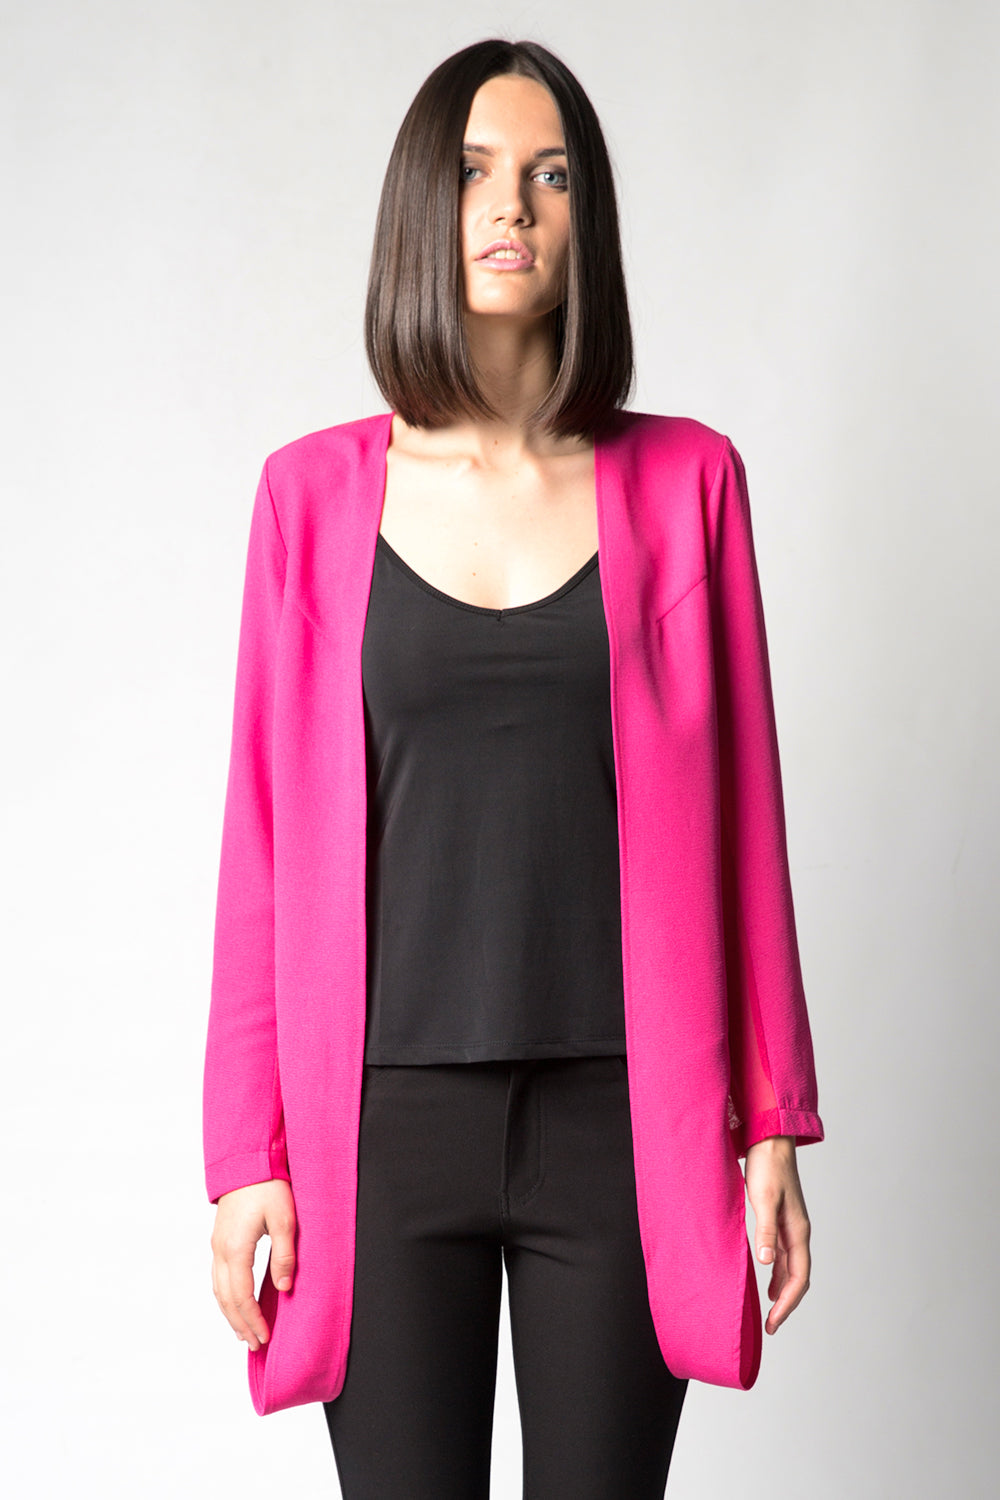 Yasmeen 10 Cardigan, Pink, Annah Stretton NZ Fashion